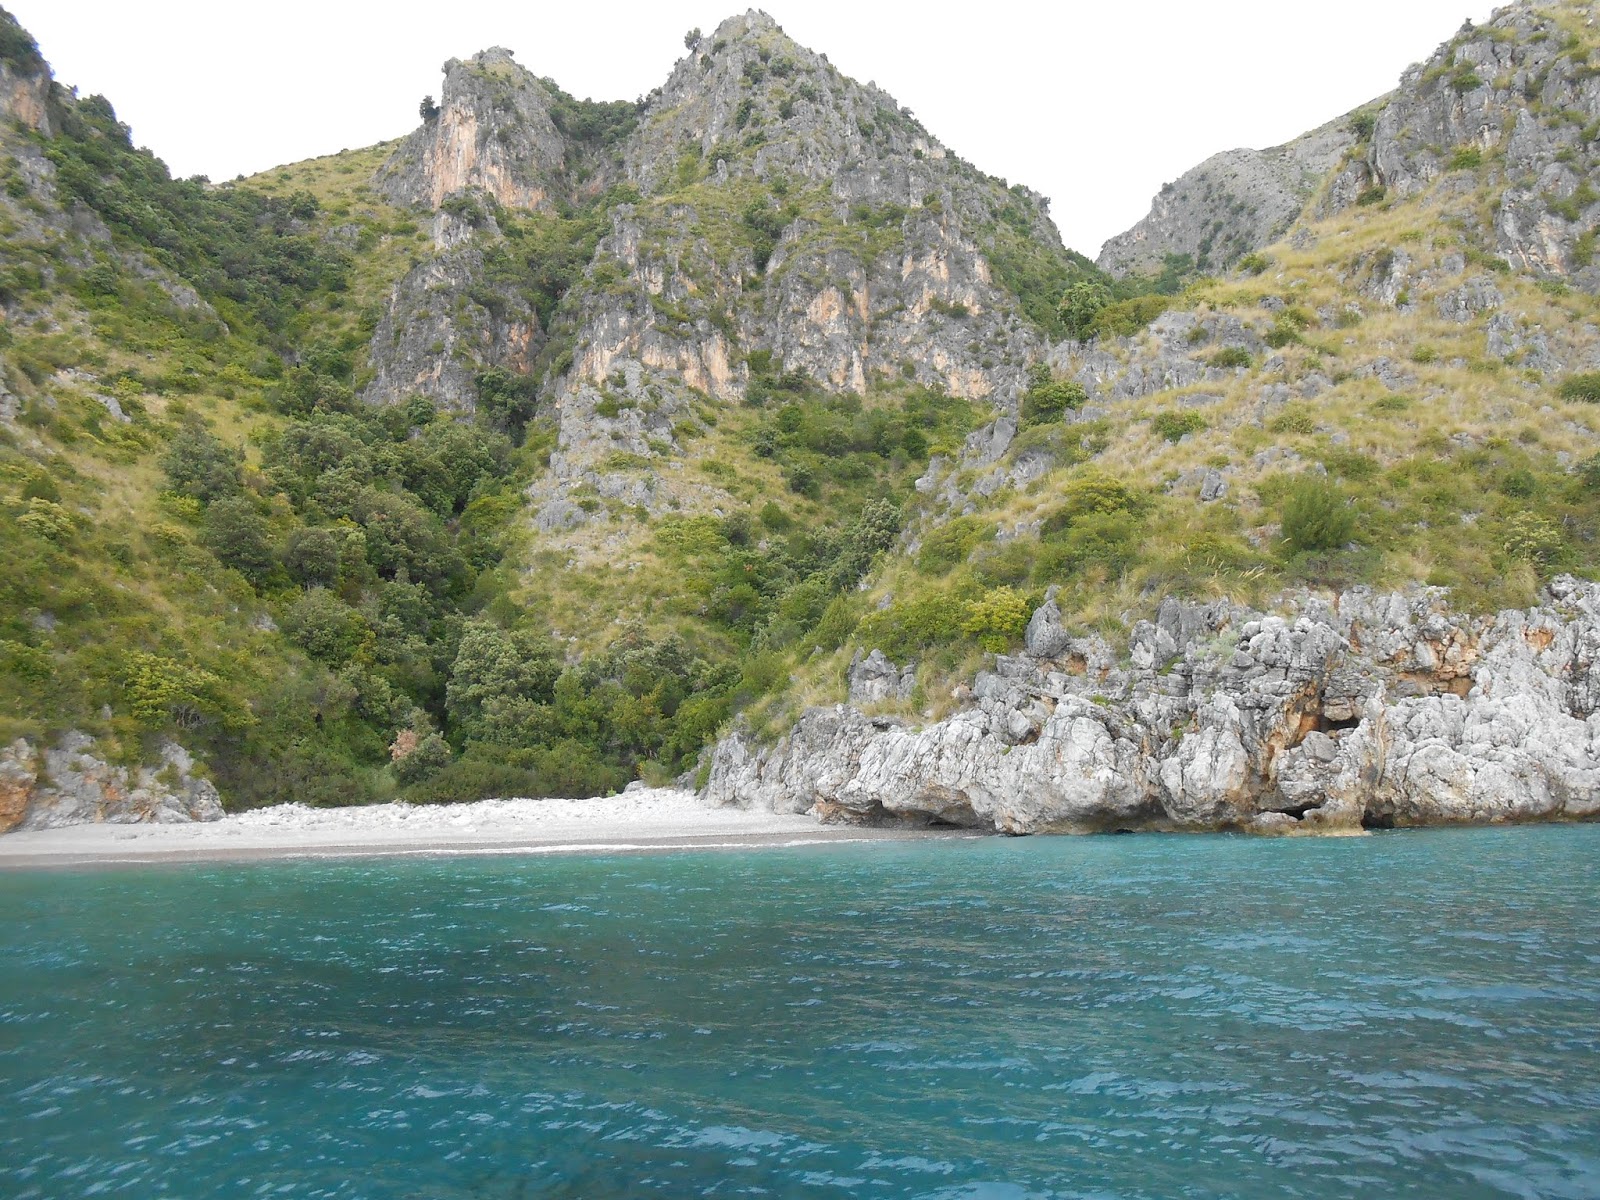 Foto av Spiaggia di Cala dei Morti med blå rent vatten yta